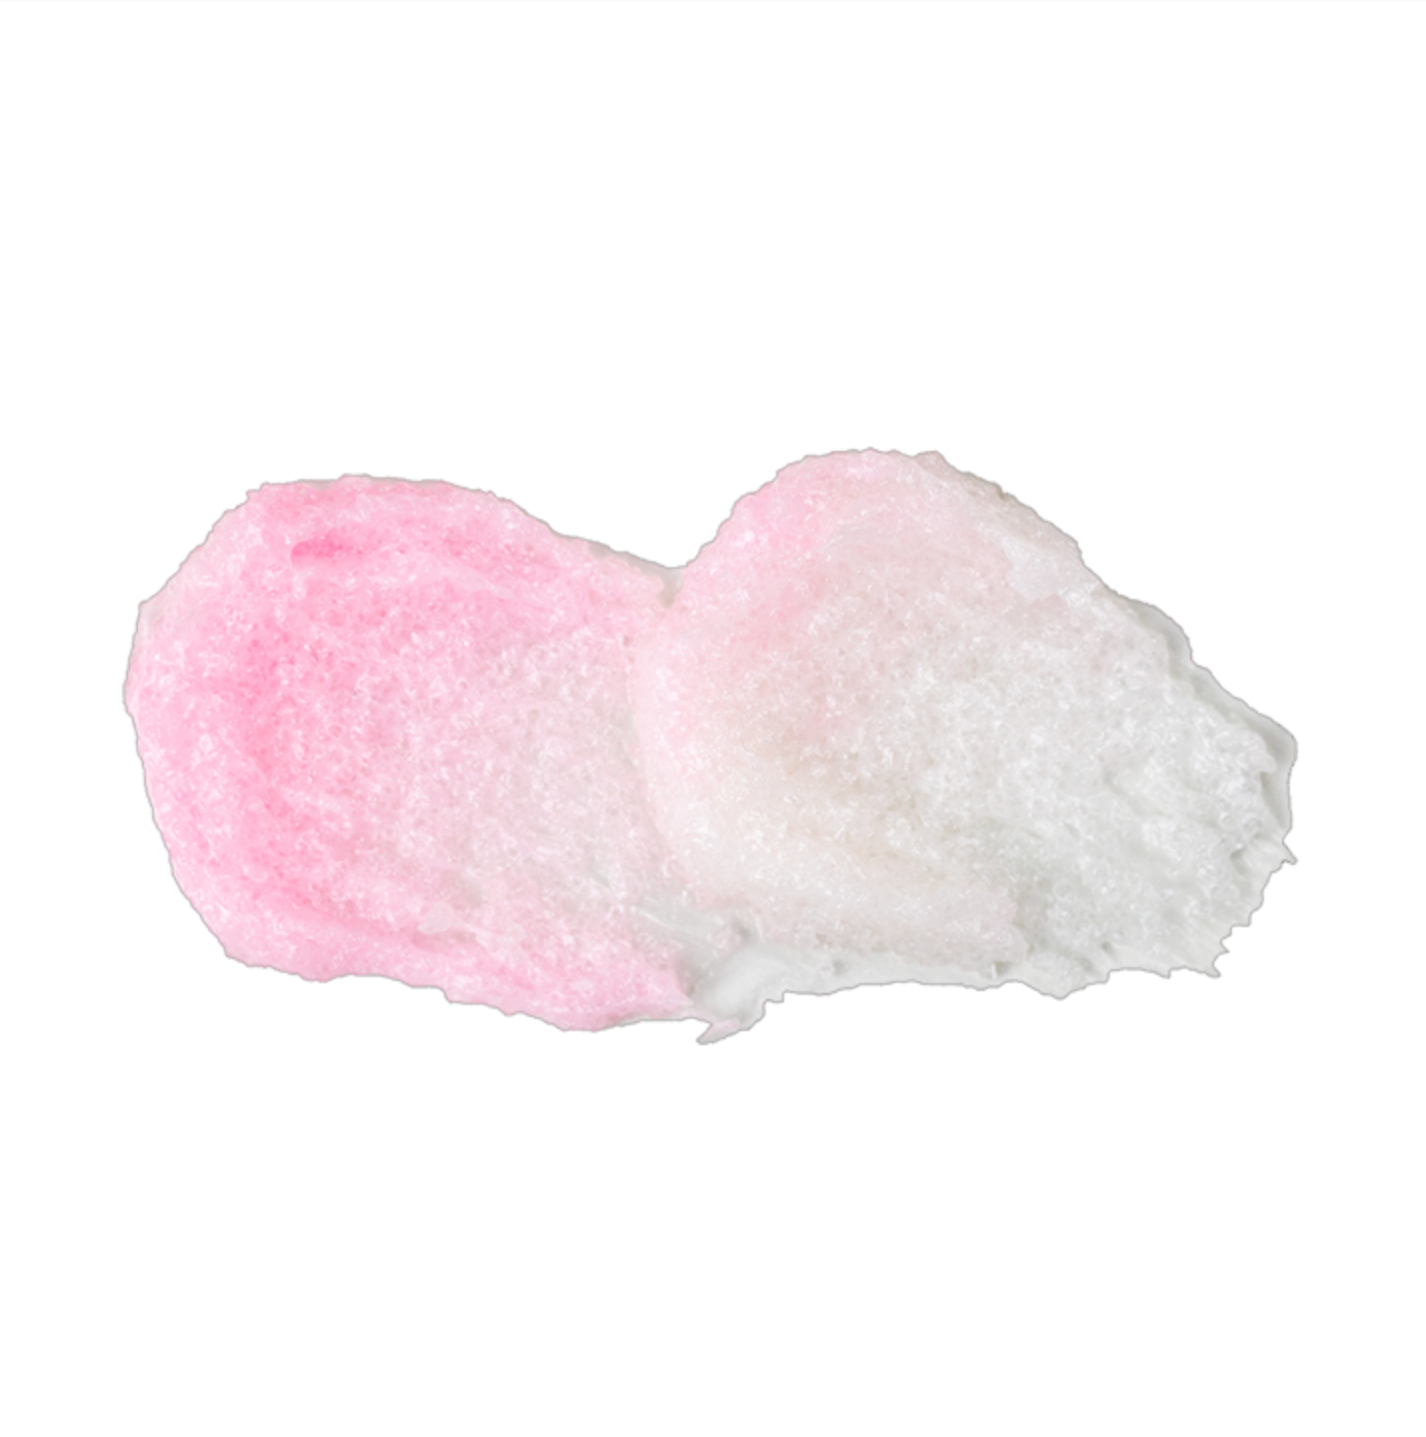 Star Sugar – Body Frosting Foaming Sugar Scrub